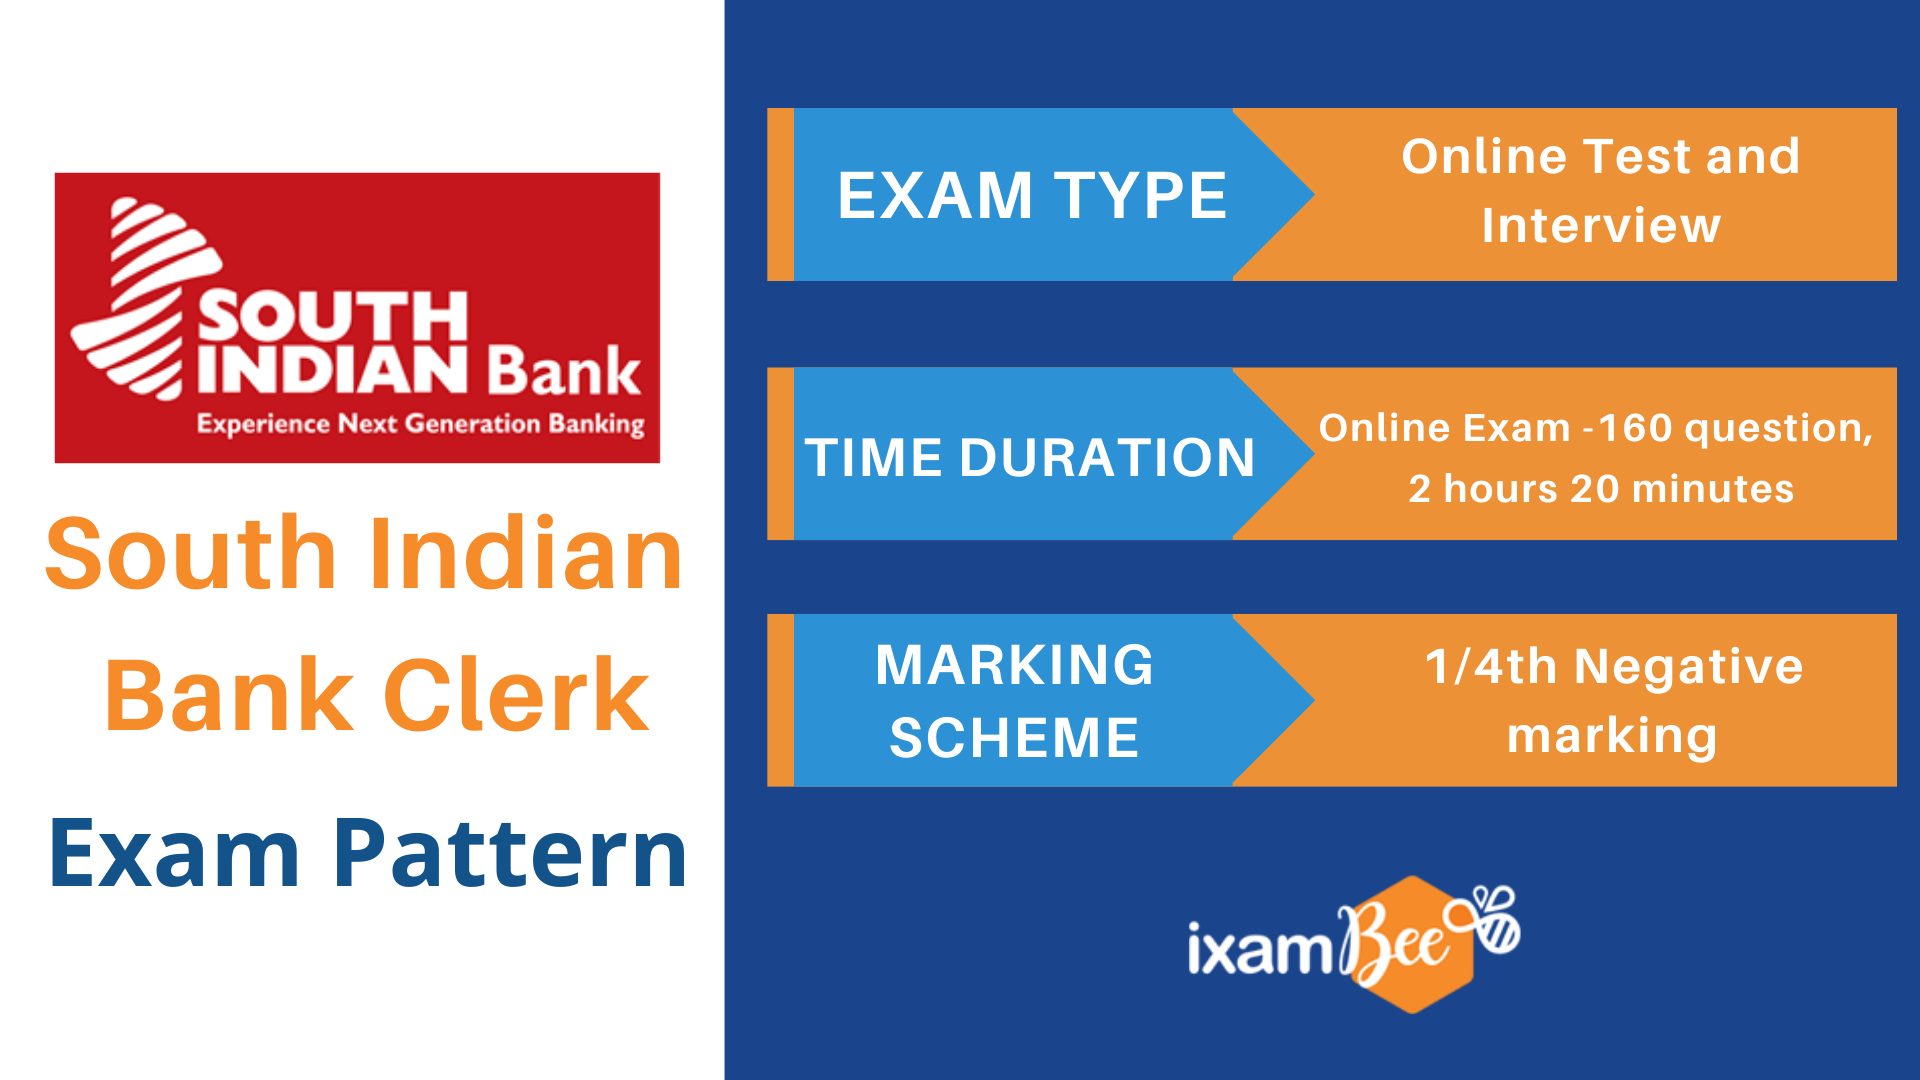 South Indian Bank Clerk Exam Pattern